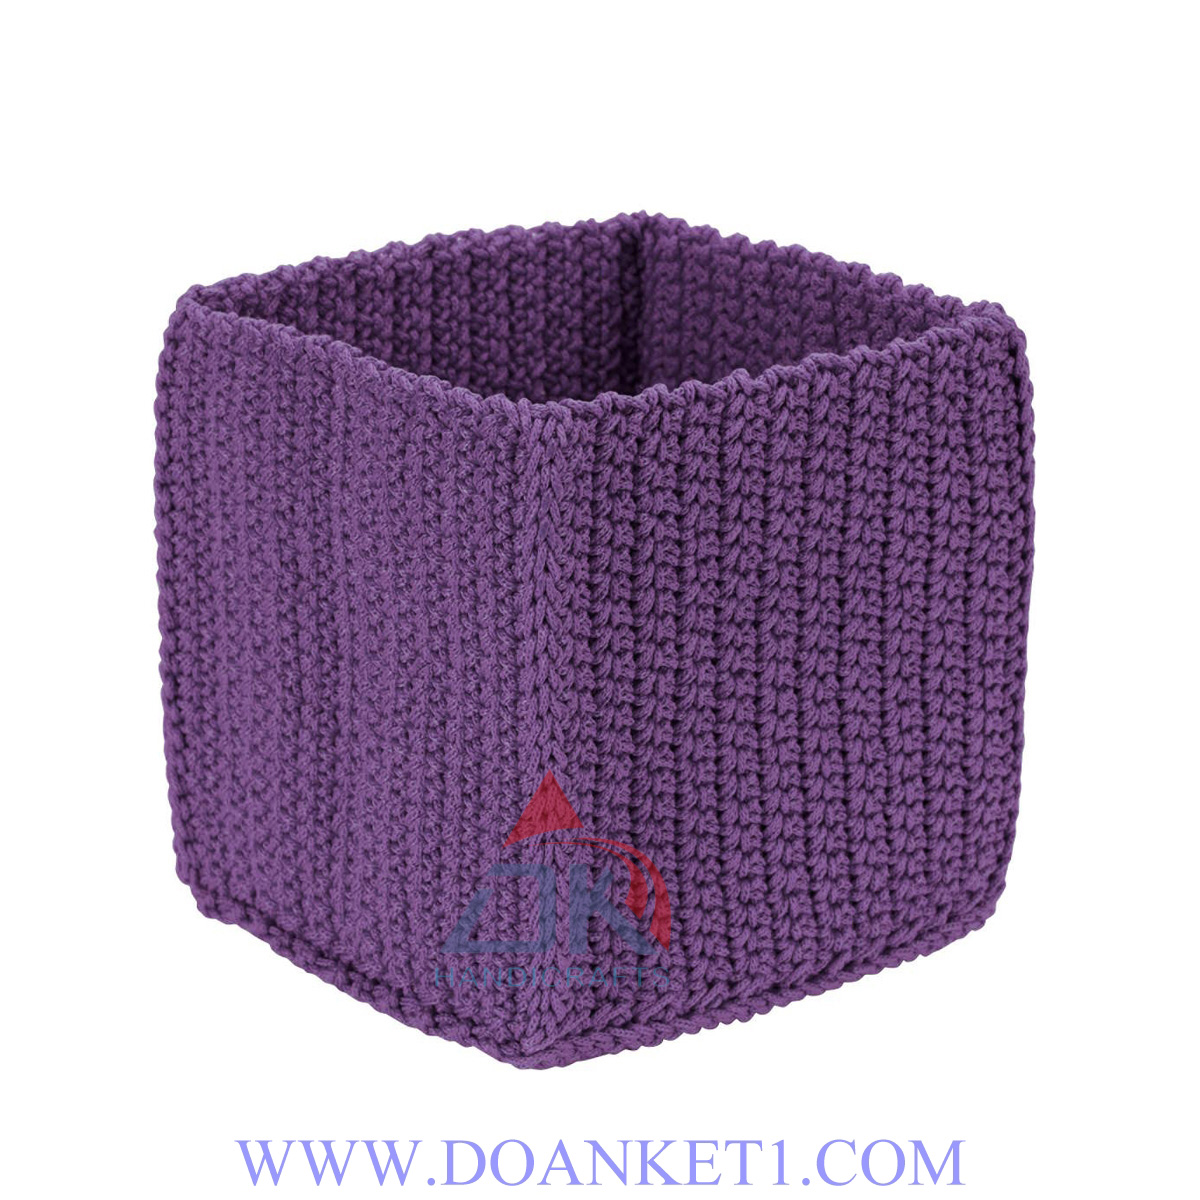 Textile Storage Basket # DK156